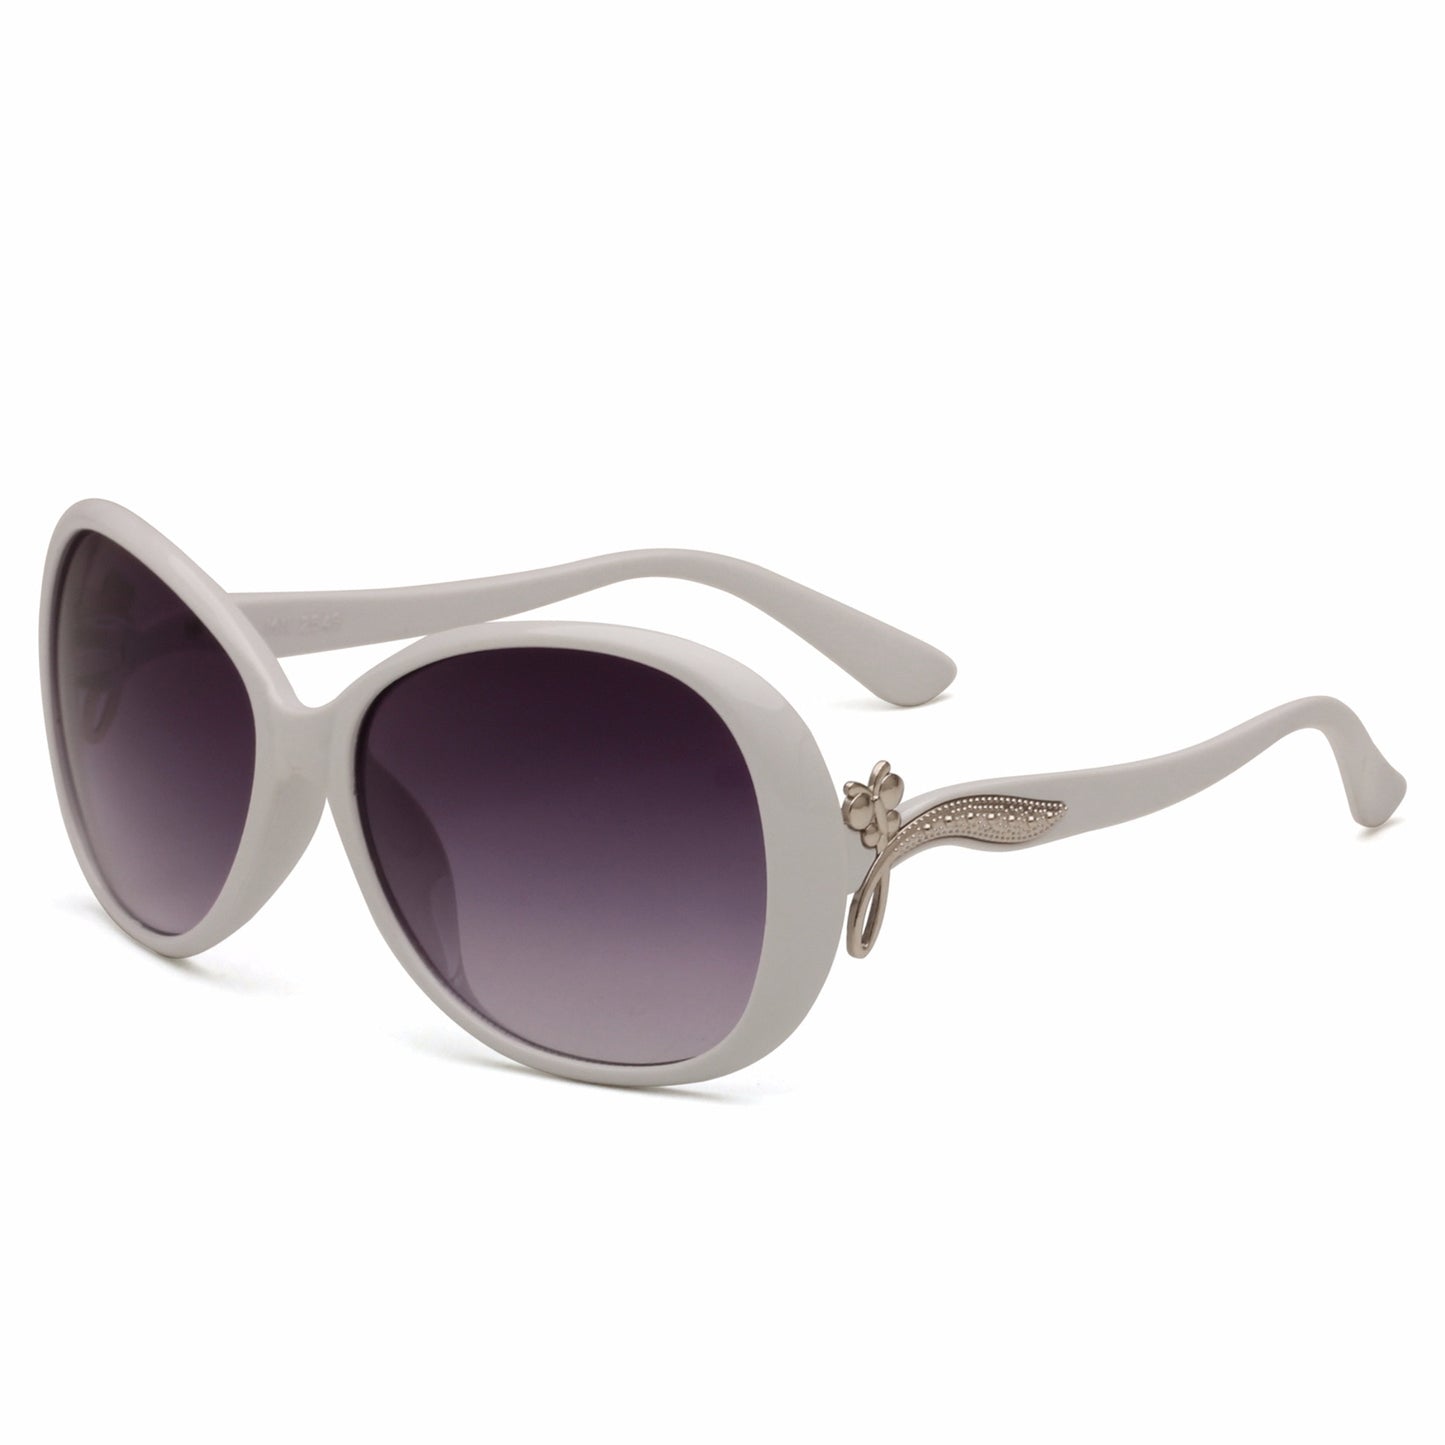 DCM Oval Vintage Sunglasses